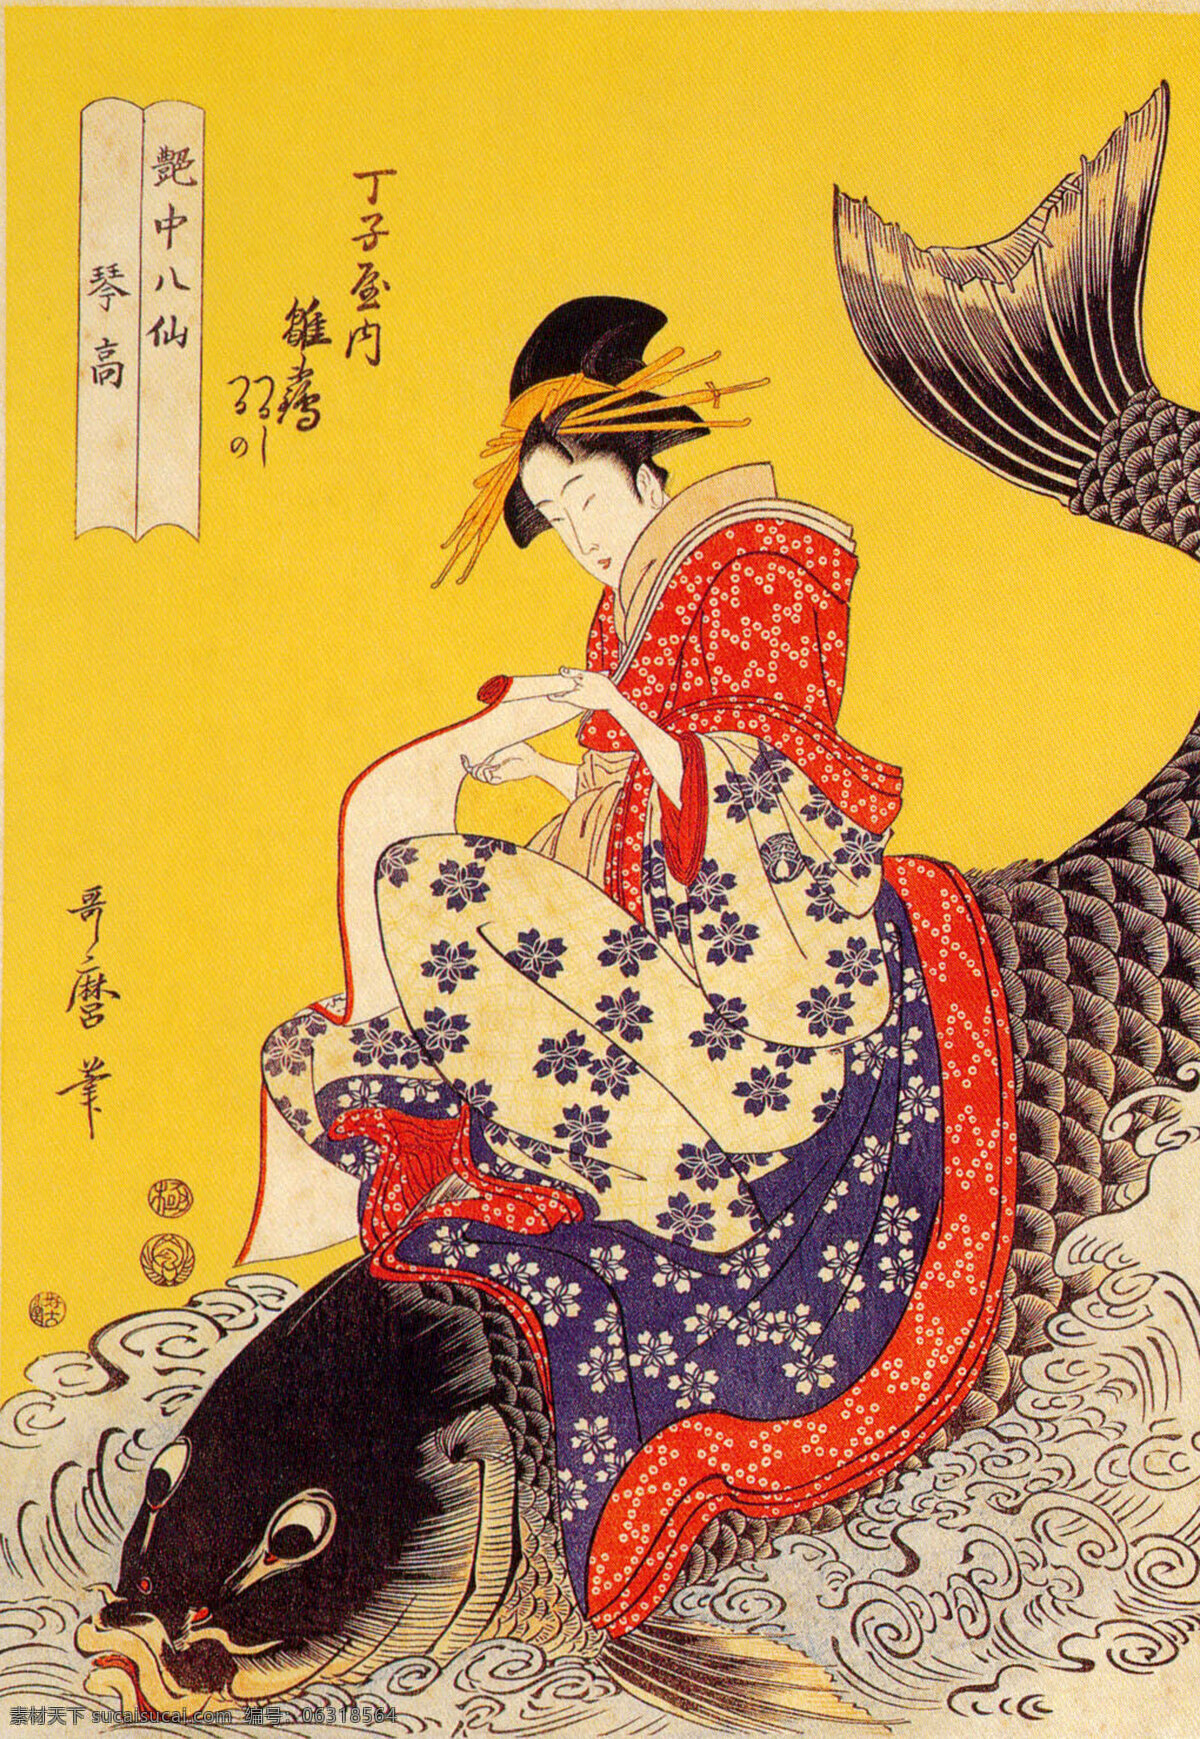 日本绘画 艳中八仙 仕女鲤鱼 日本传统图片 日本挂历 绘画书法 文化艺术